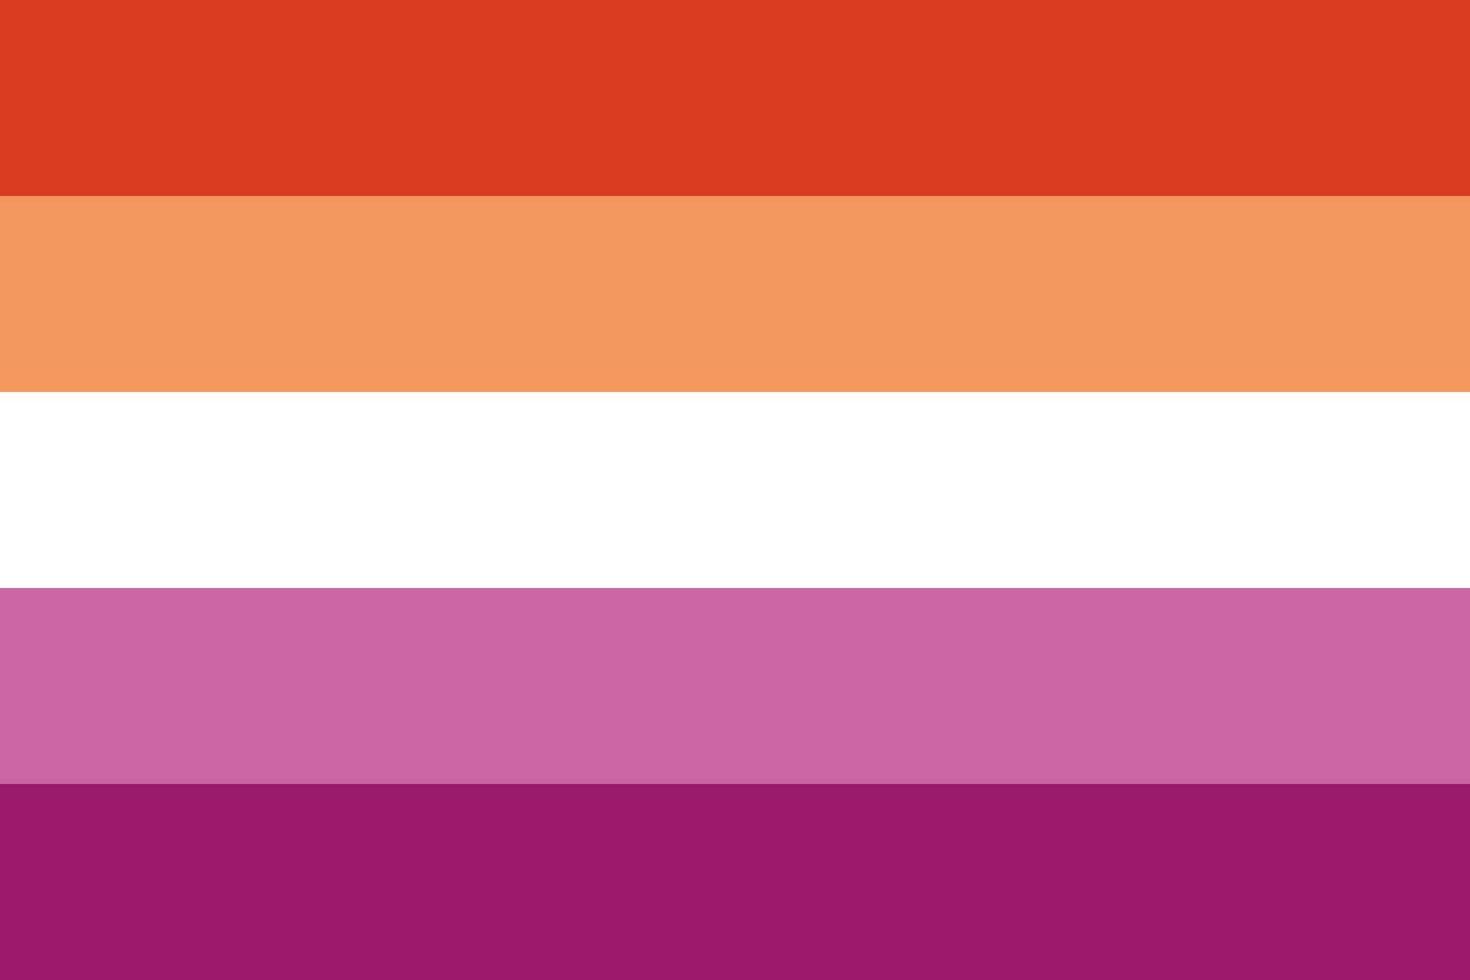 lesbica amore orgoglio identità bandiera vettore